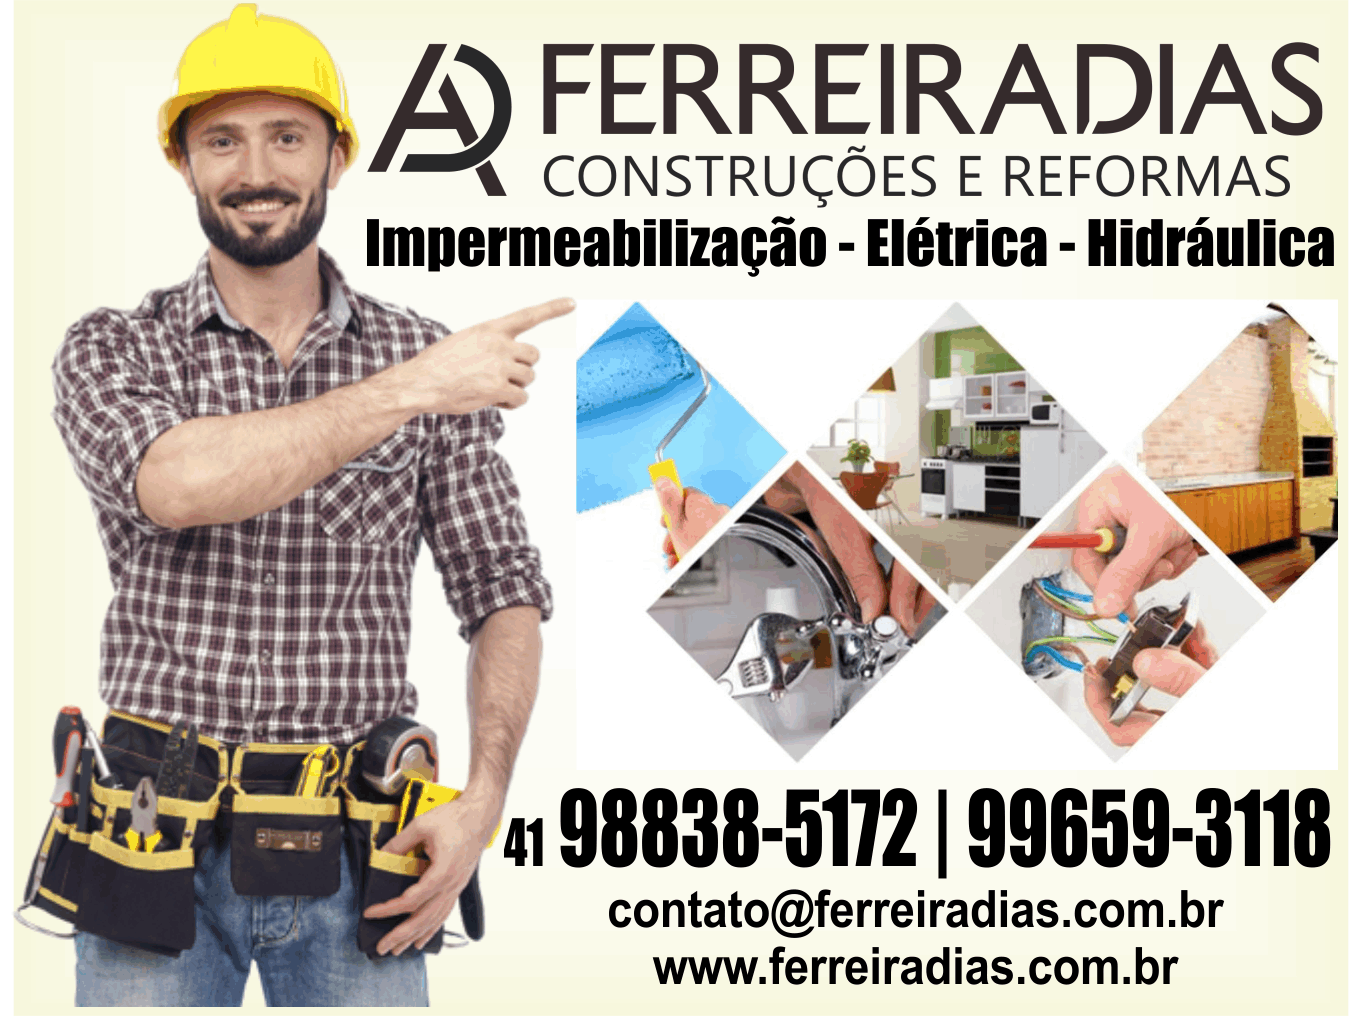 Ferreira Dias Construções e Reformas      Fones: (41) 98838-5172 / (41) 99659-3118